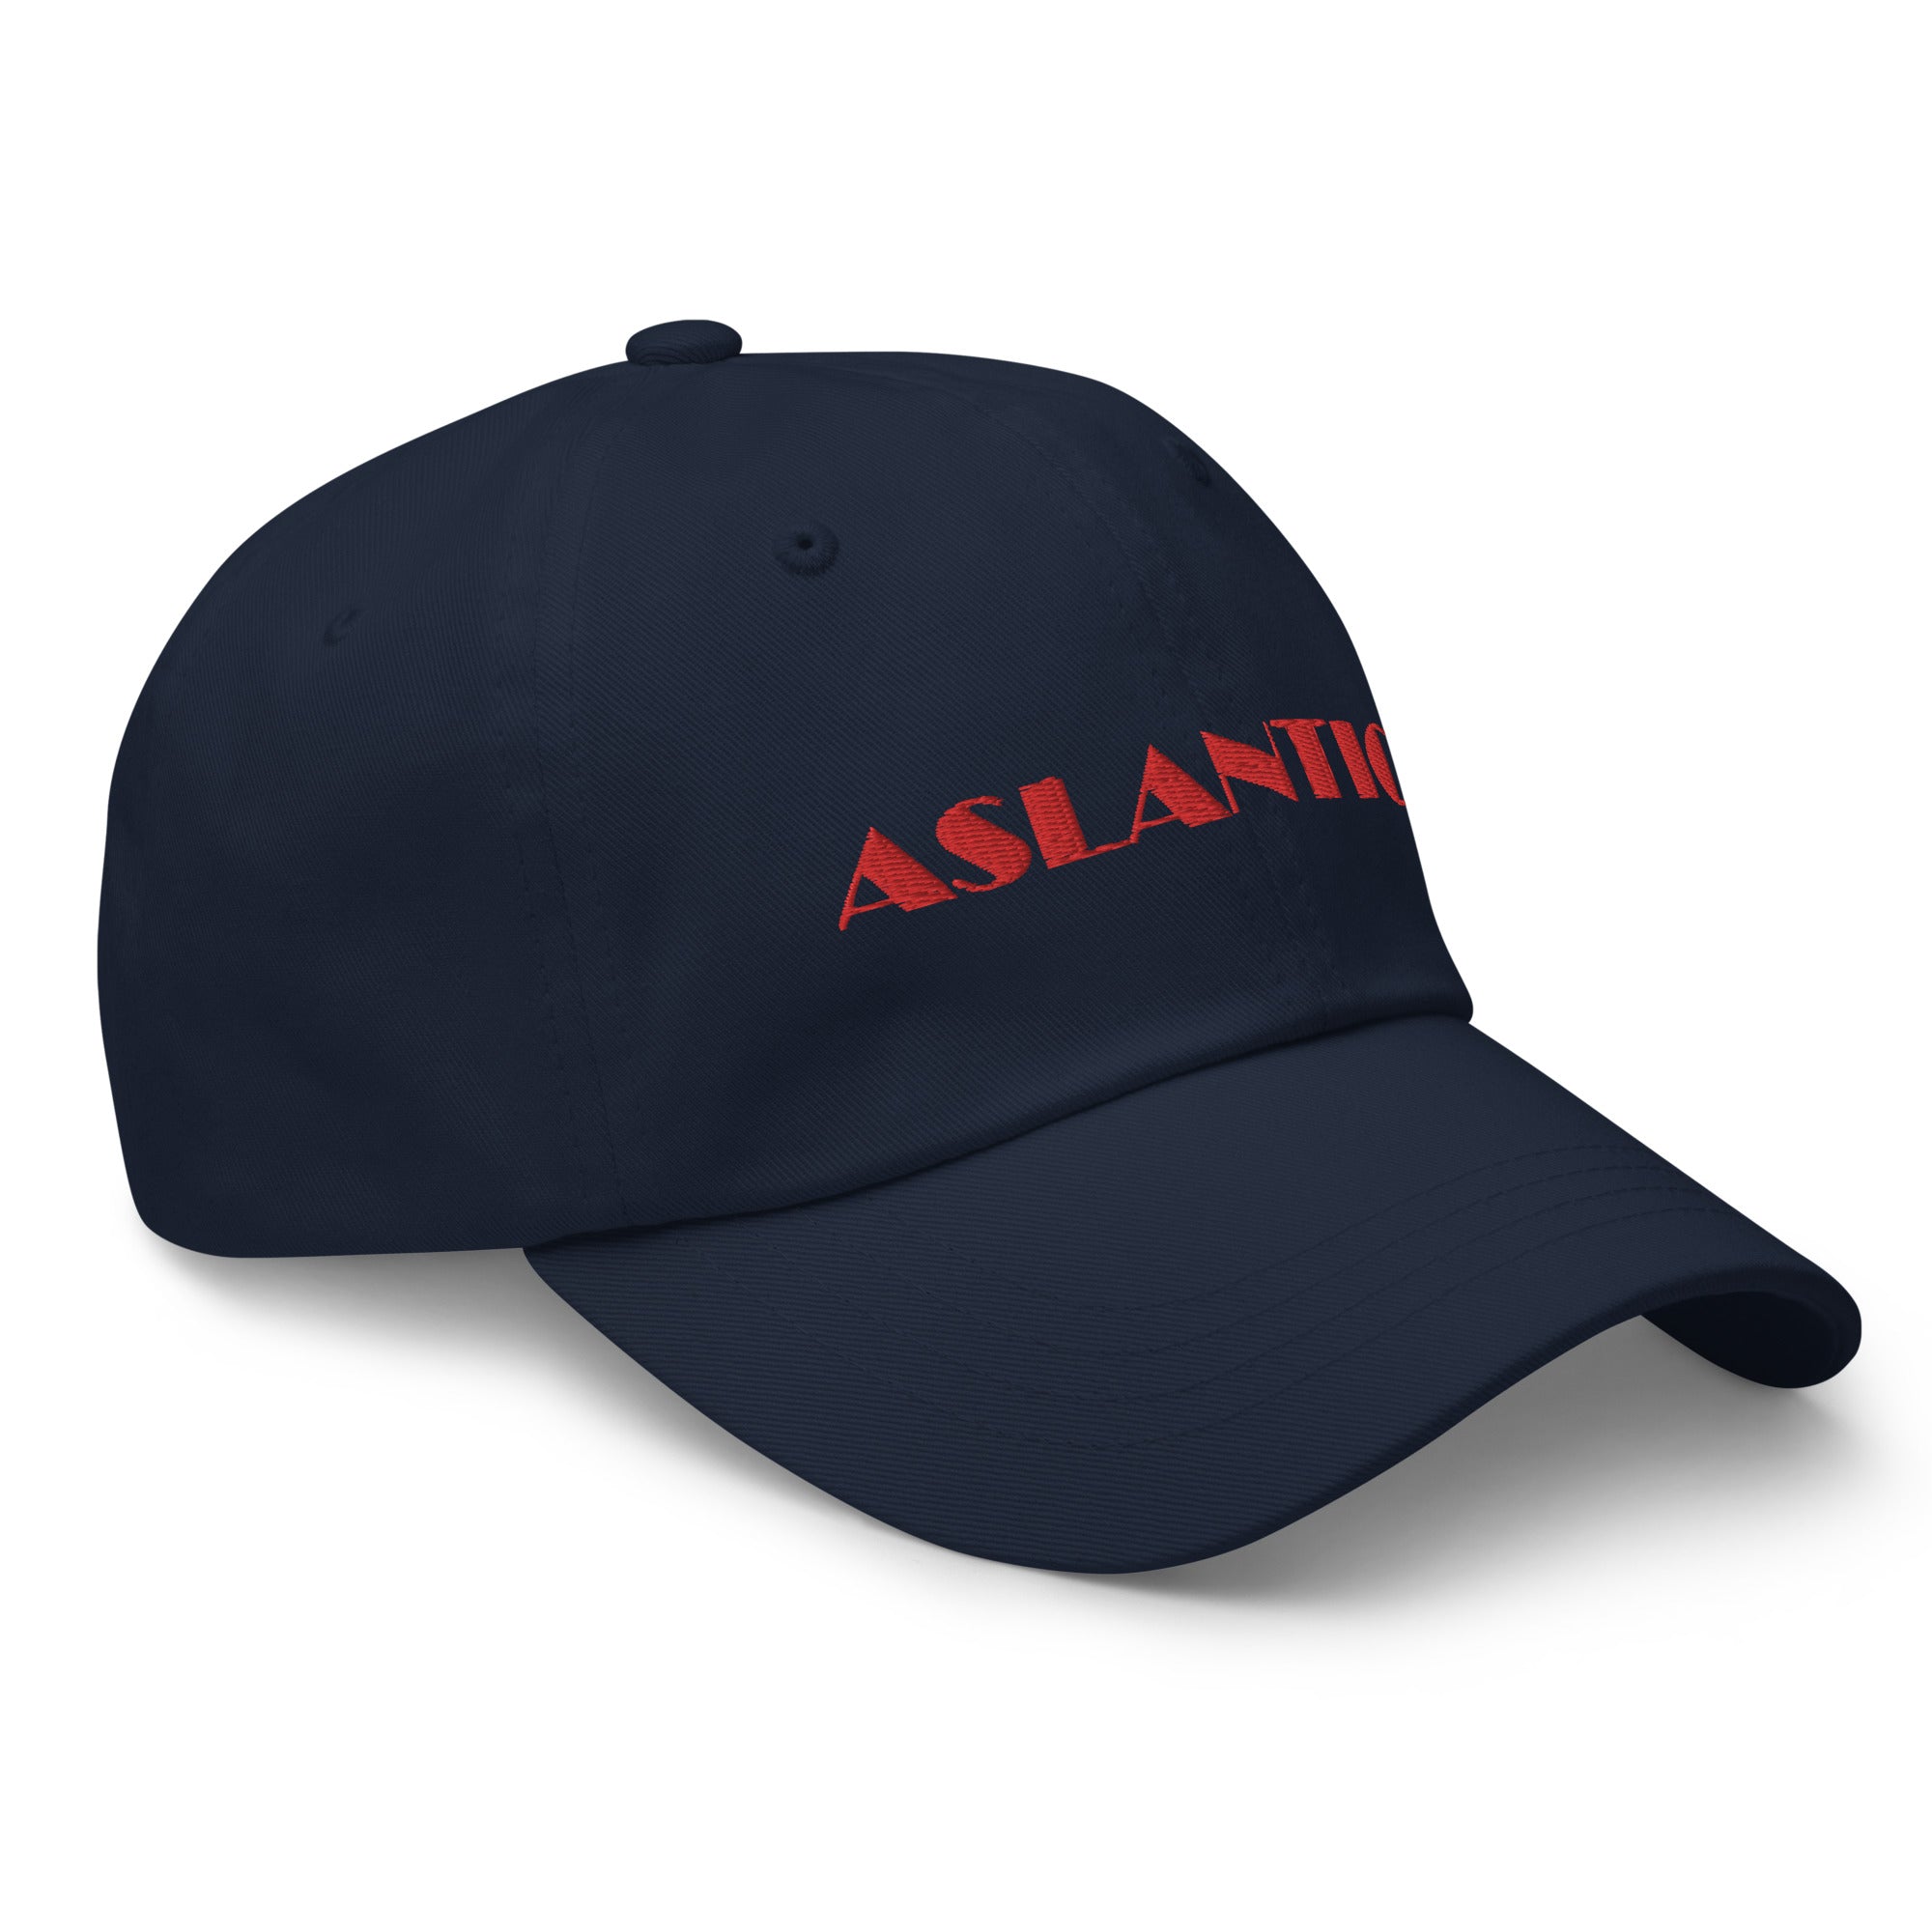 Aslantics Cap